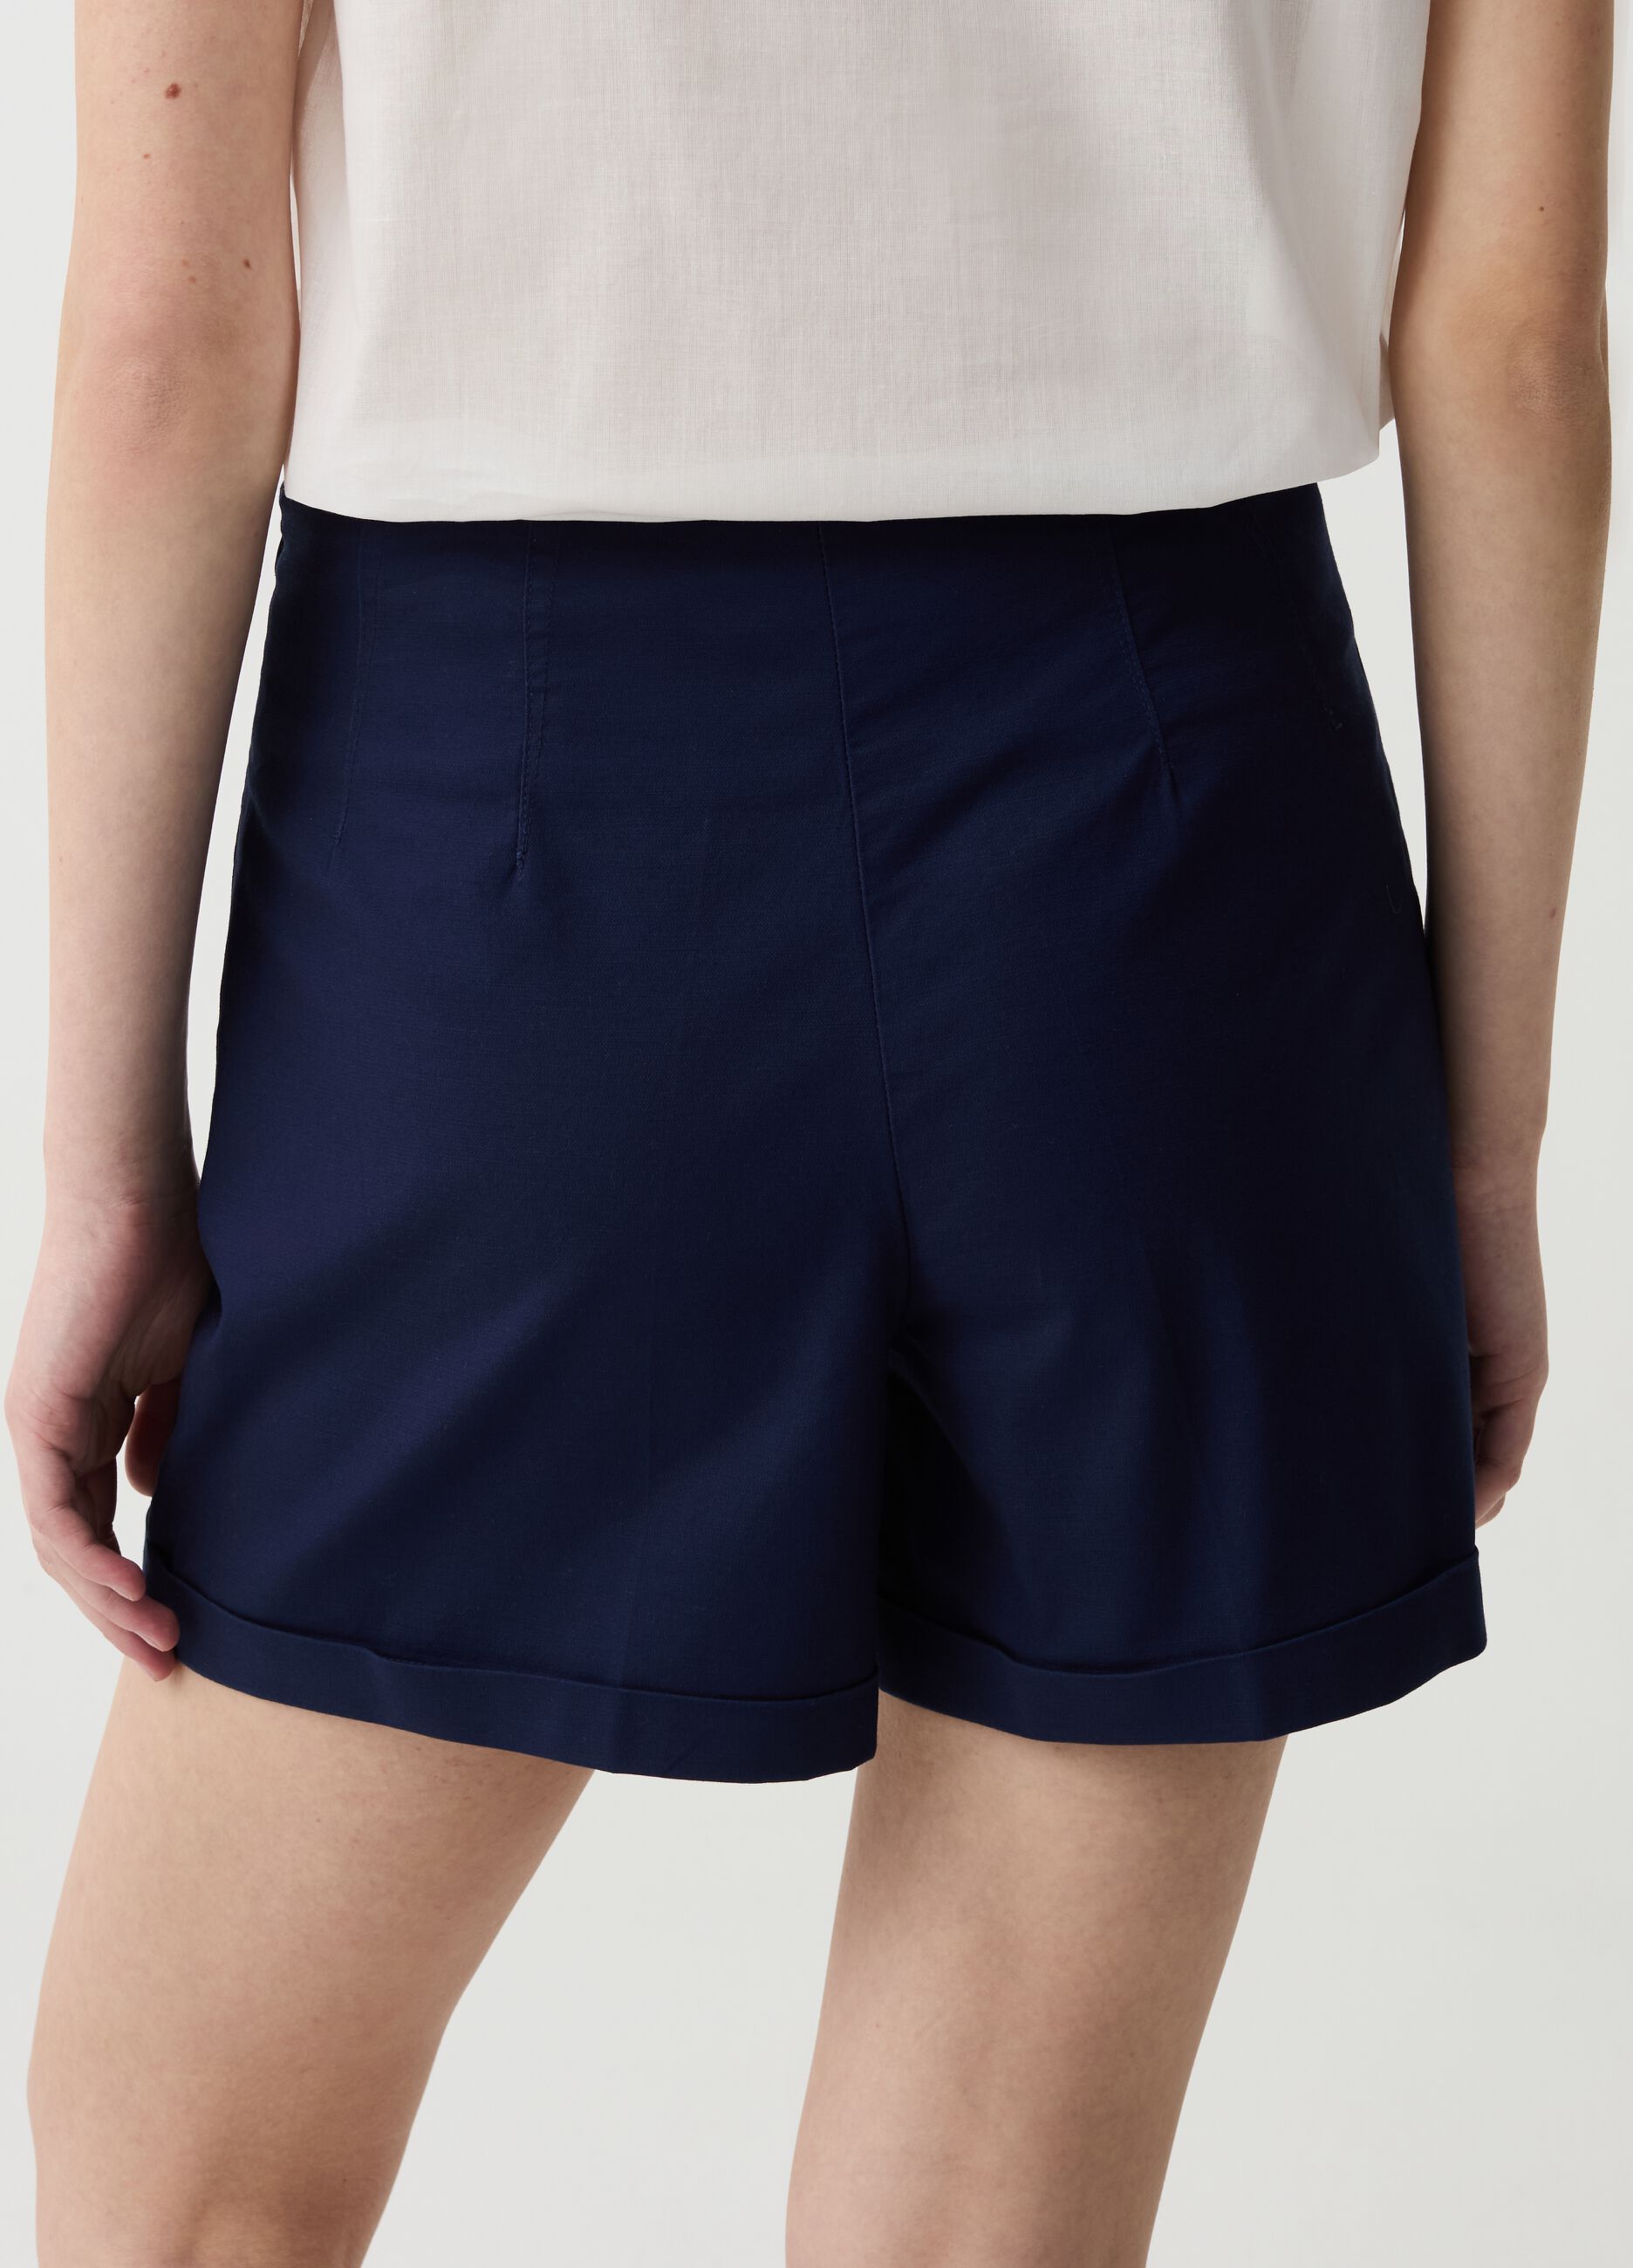 Shorts de algodón elástico con bajos vueltos